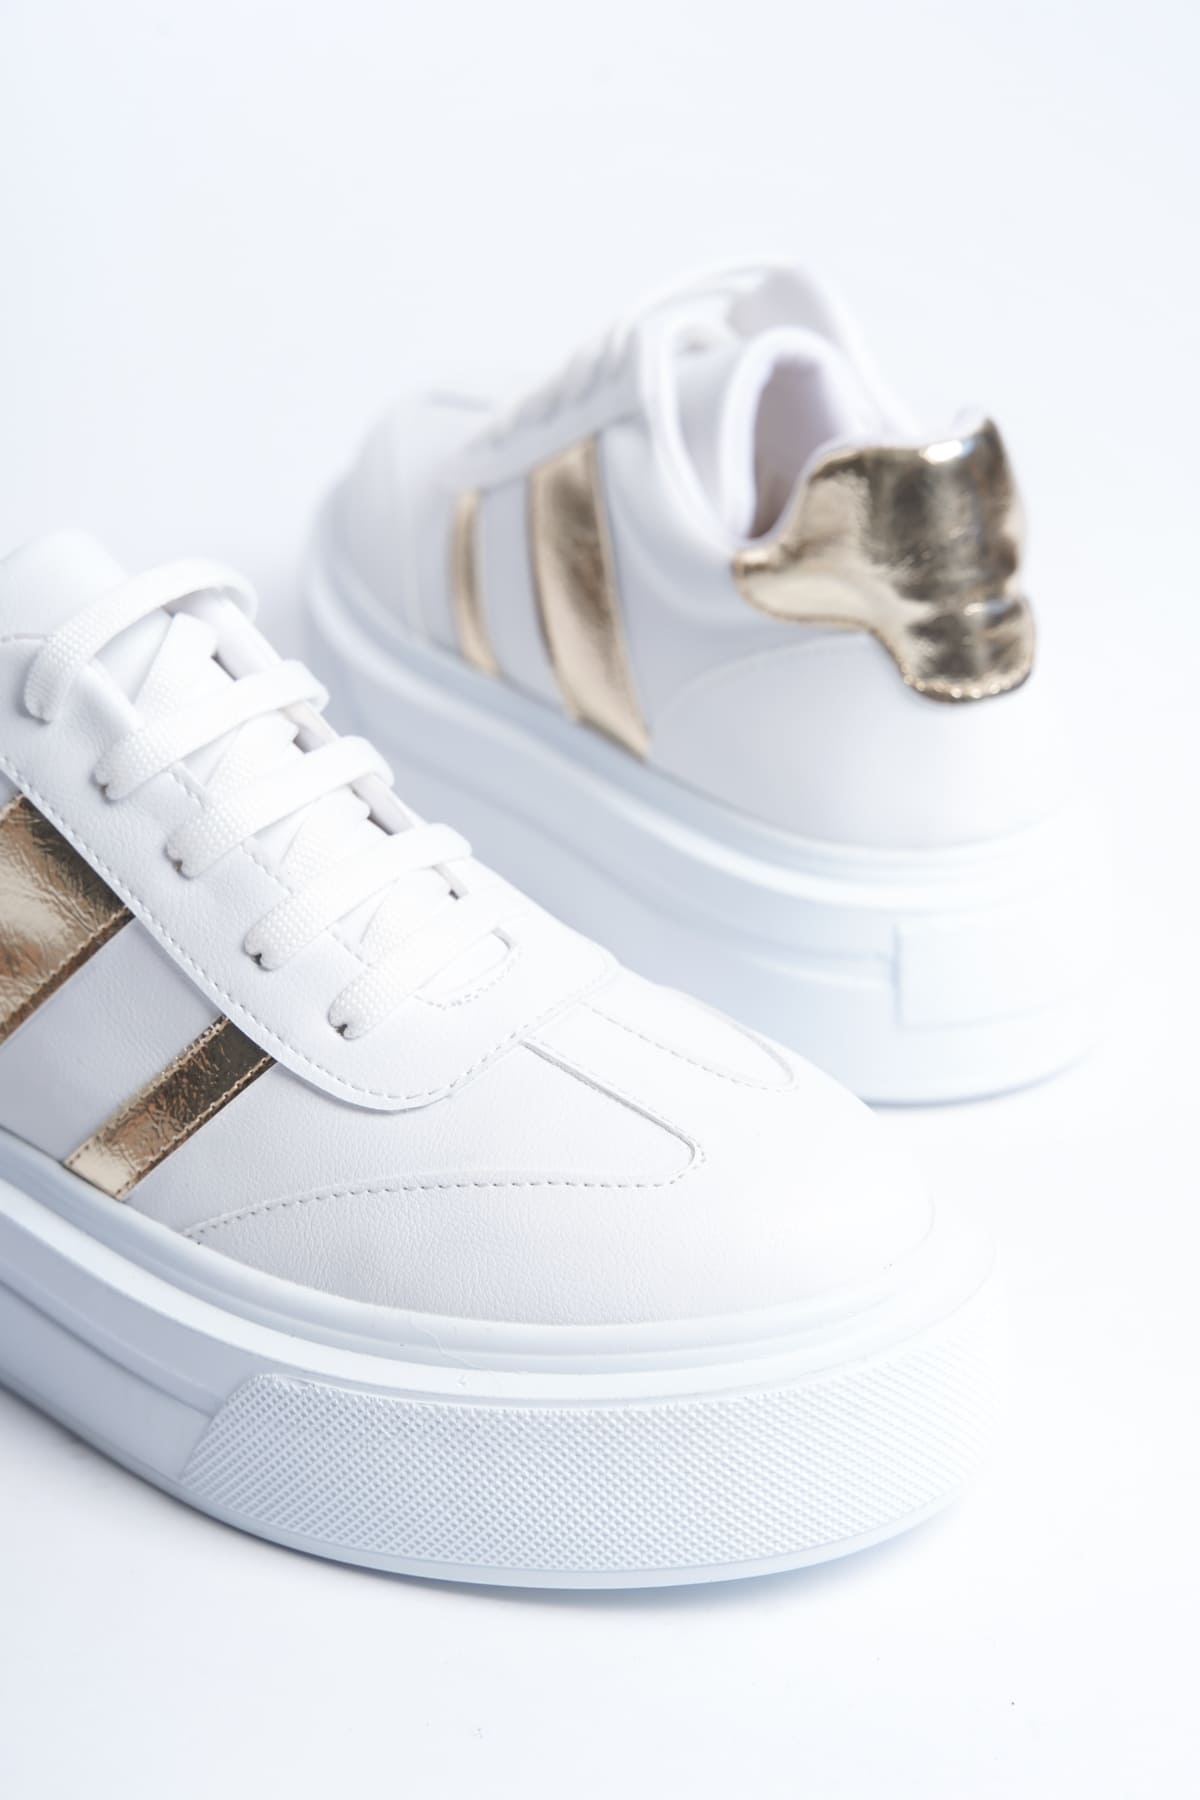 DIAS Bağcıklı Ortopedik Taban Kadın Sneaker Ayakkabı  Beyaz/Altın